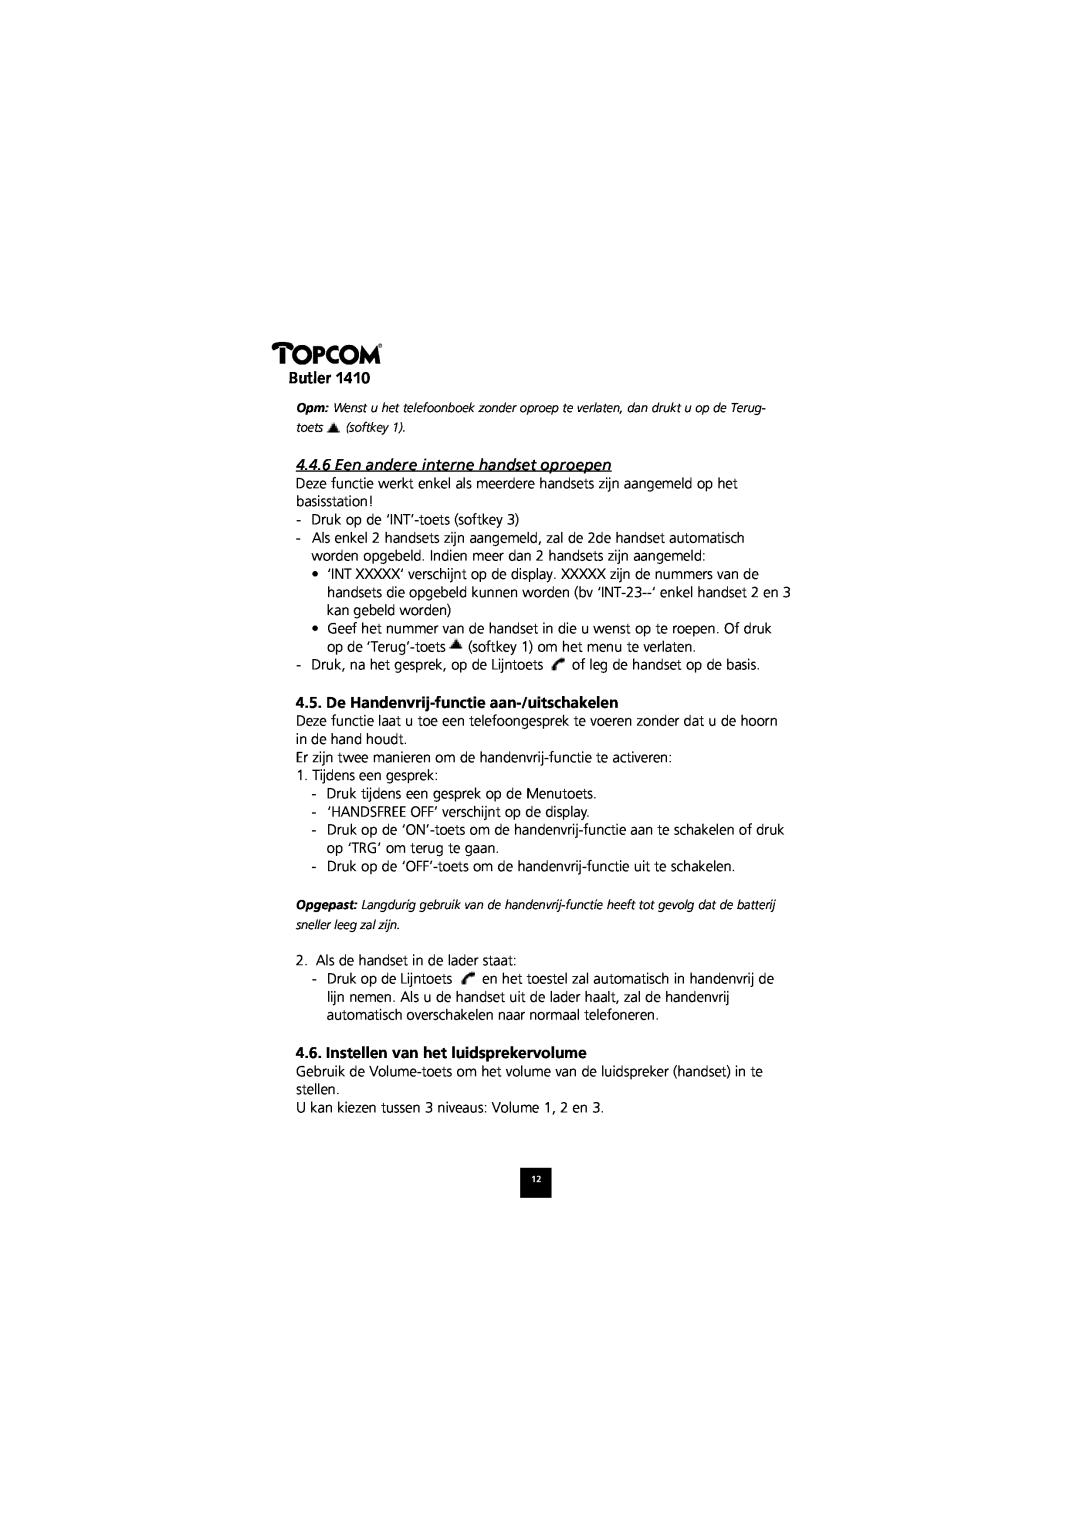 Topcom 1410 manual Een andere interne handset oproepen, De Handenvrij-functie aan-/uitschakelen, Butler 